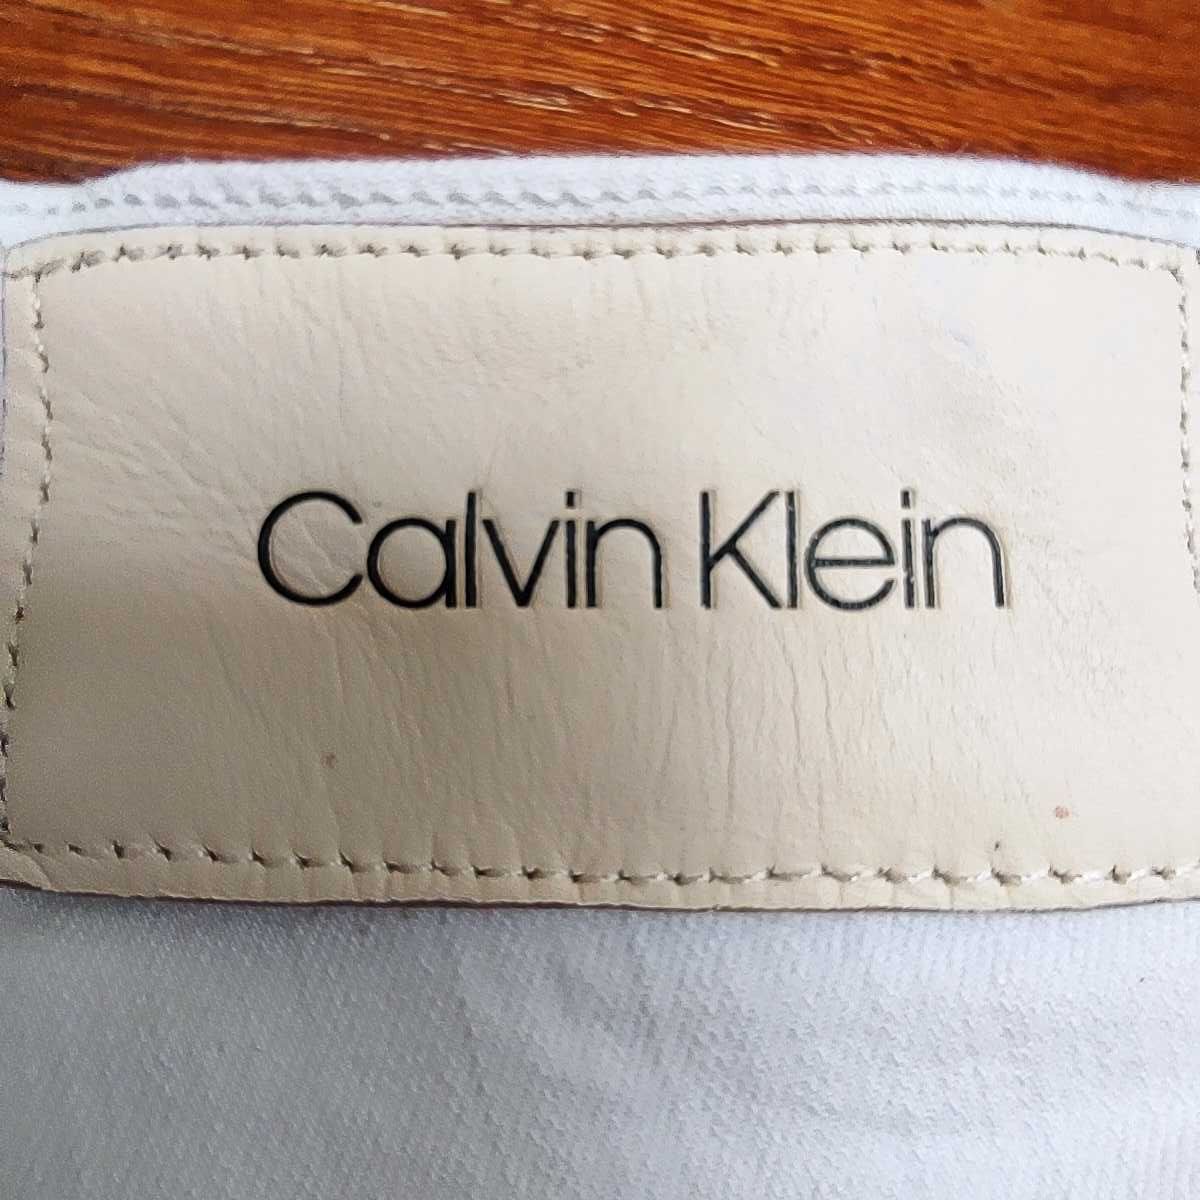 Spodnie jeans CALVIN KLAIN - rozmiar W33